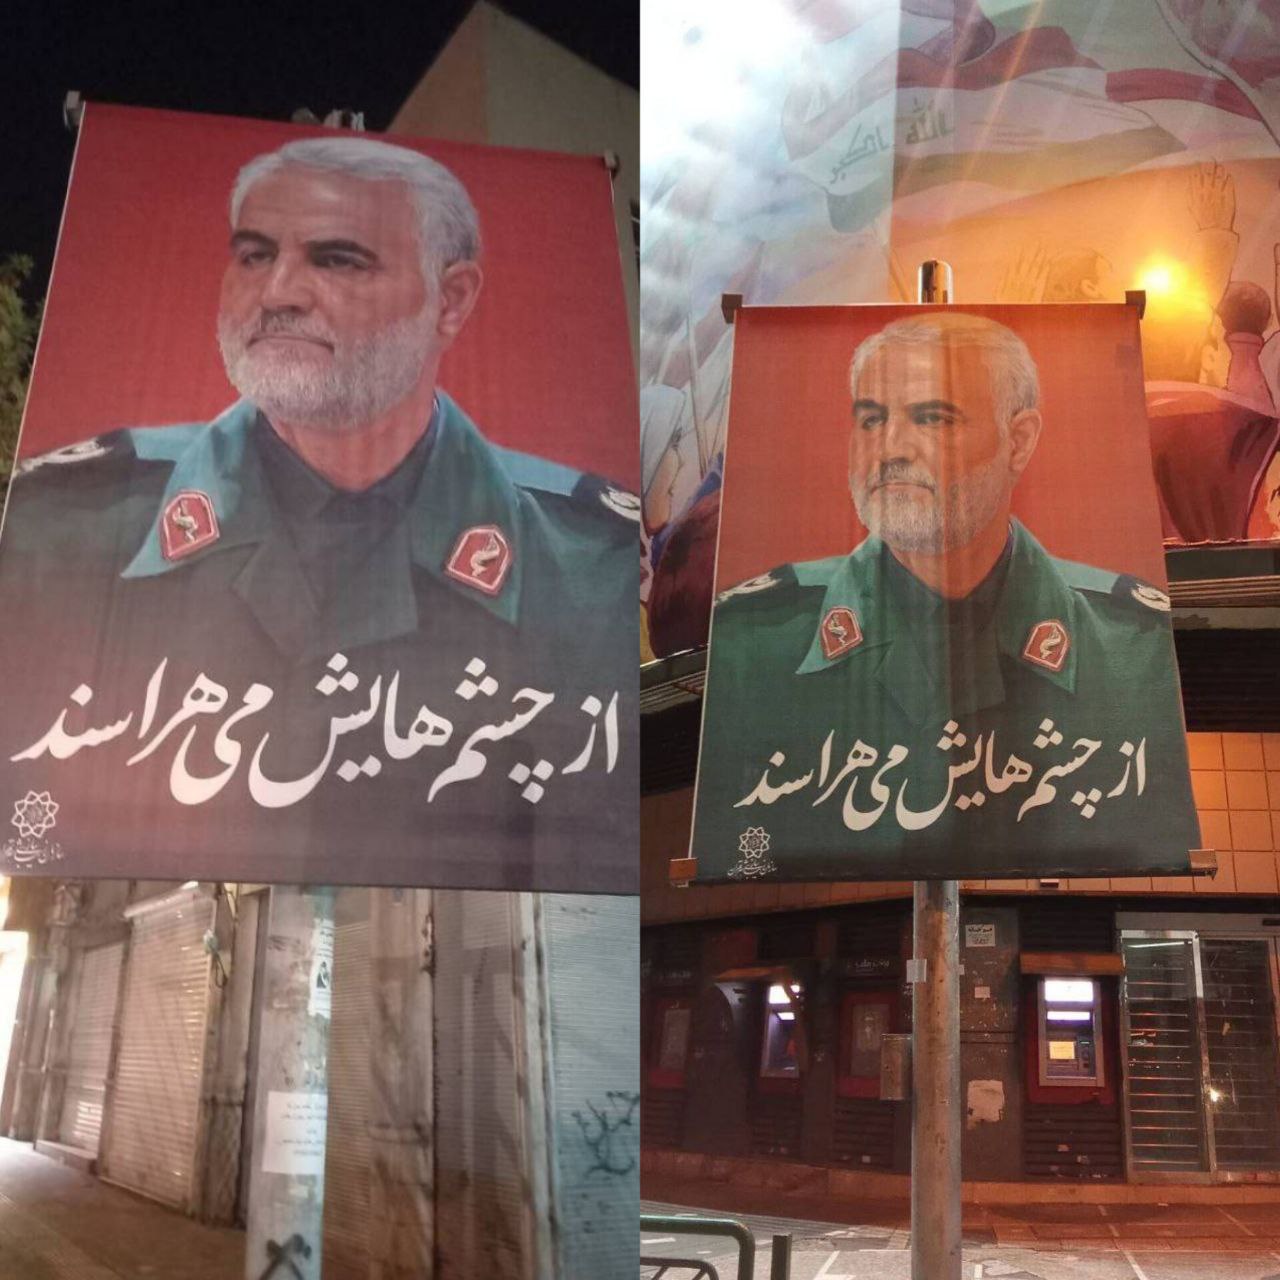 واکنش متفاوت شهرداری تهران به اتفاقات دیشب اصفهان